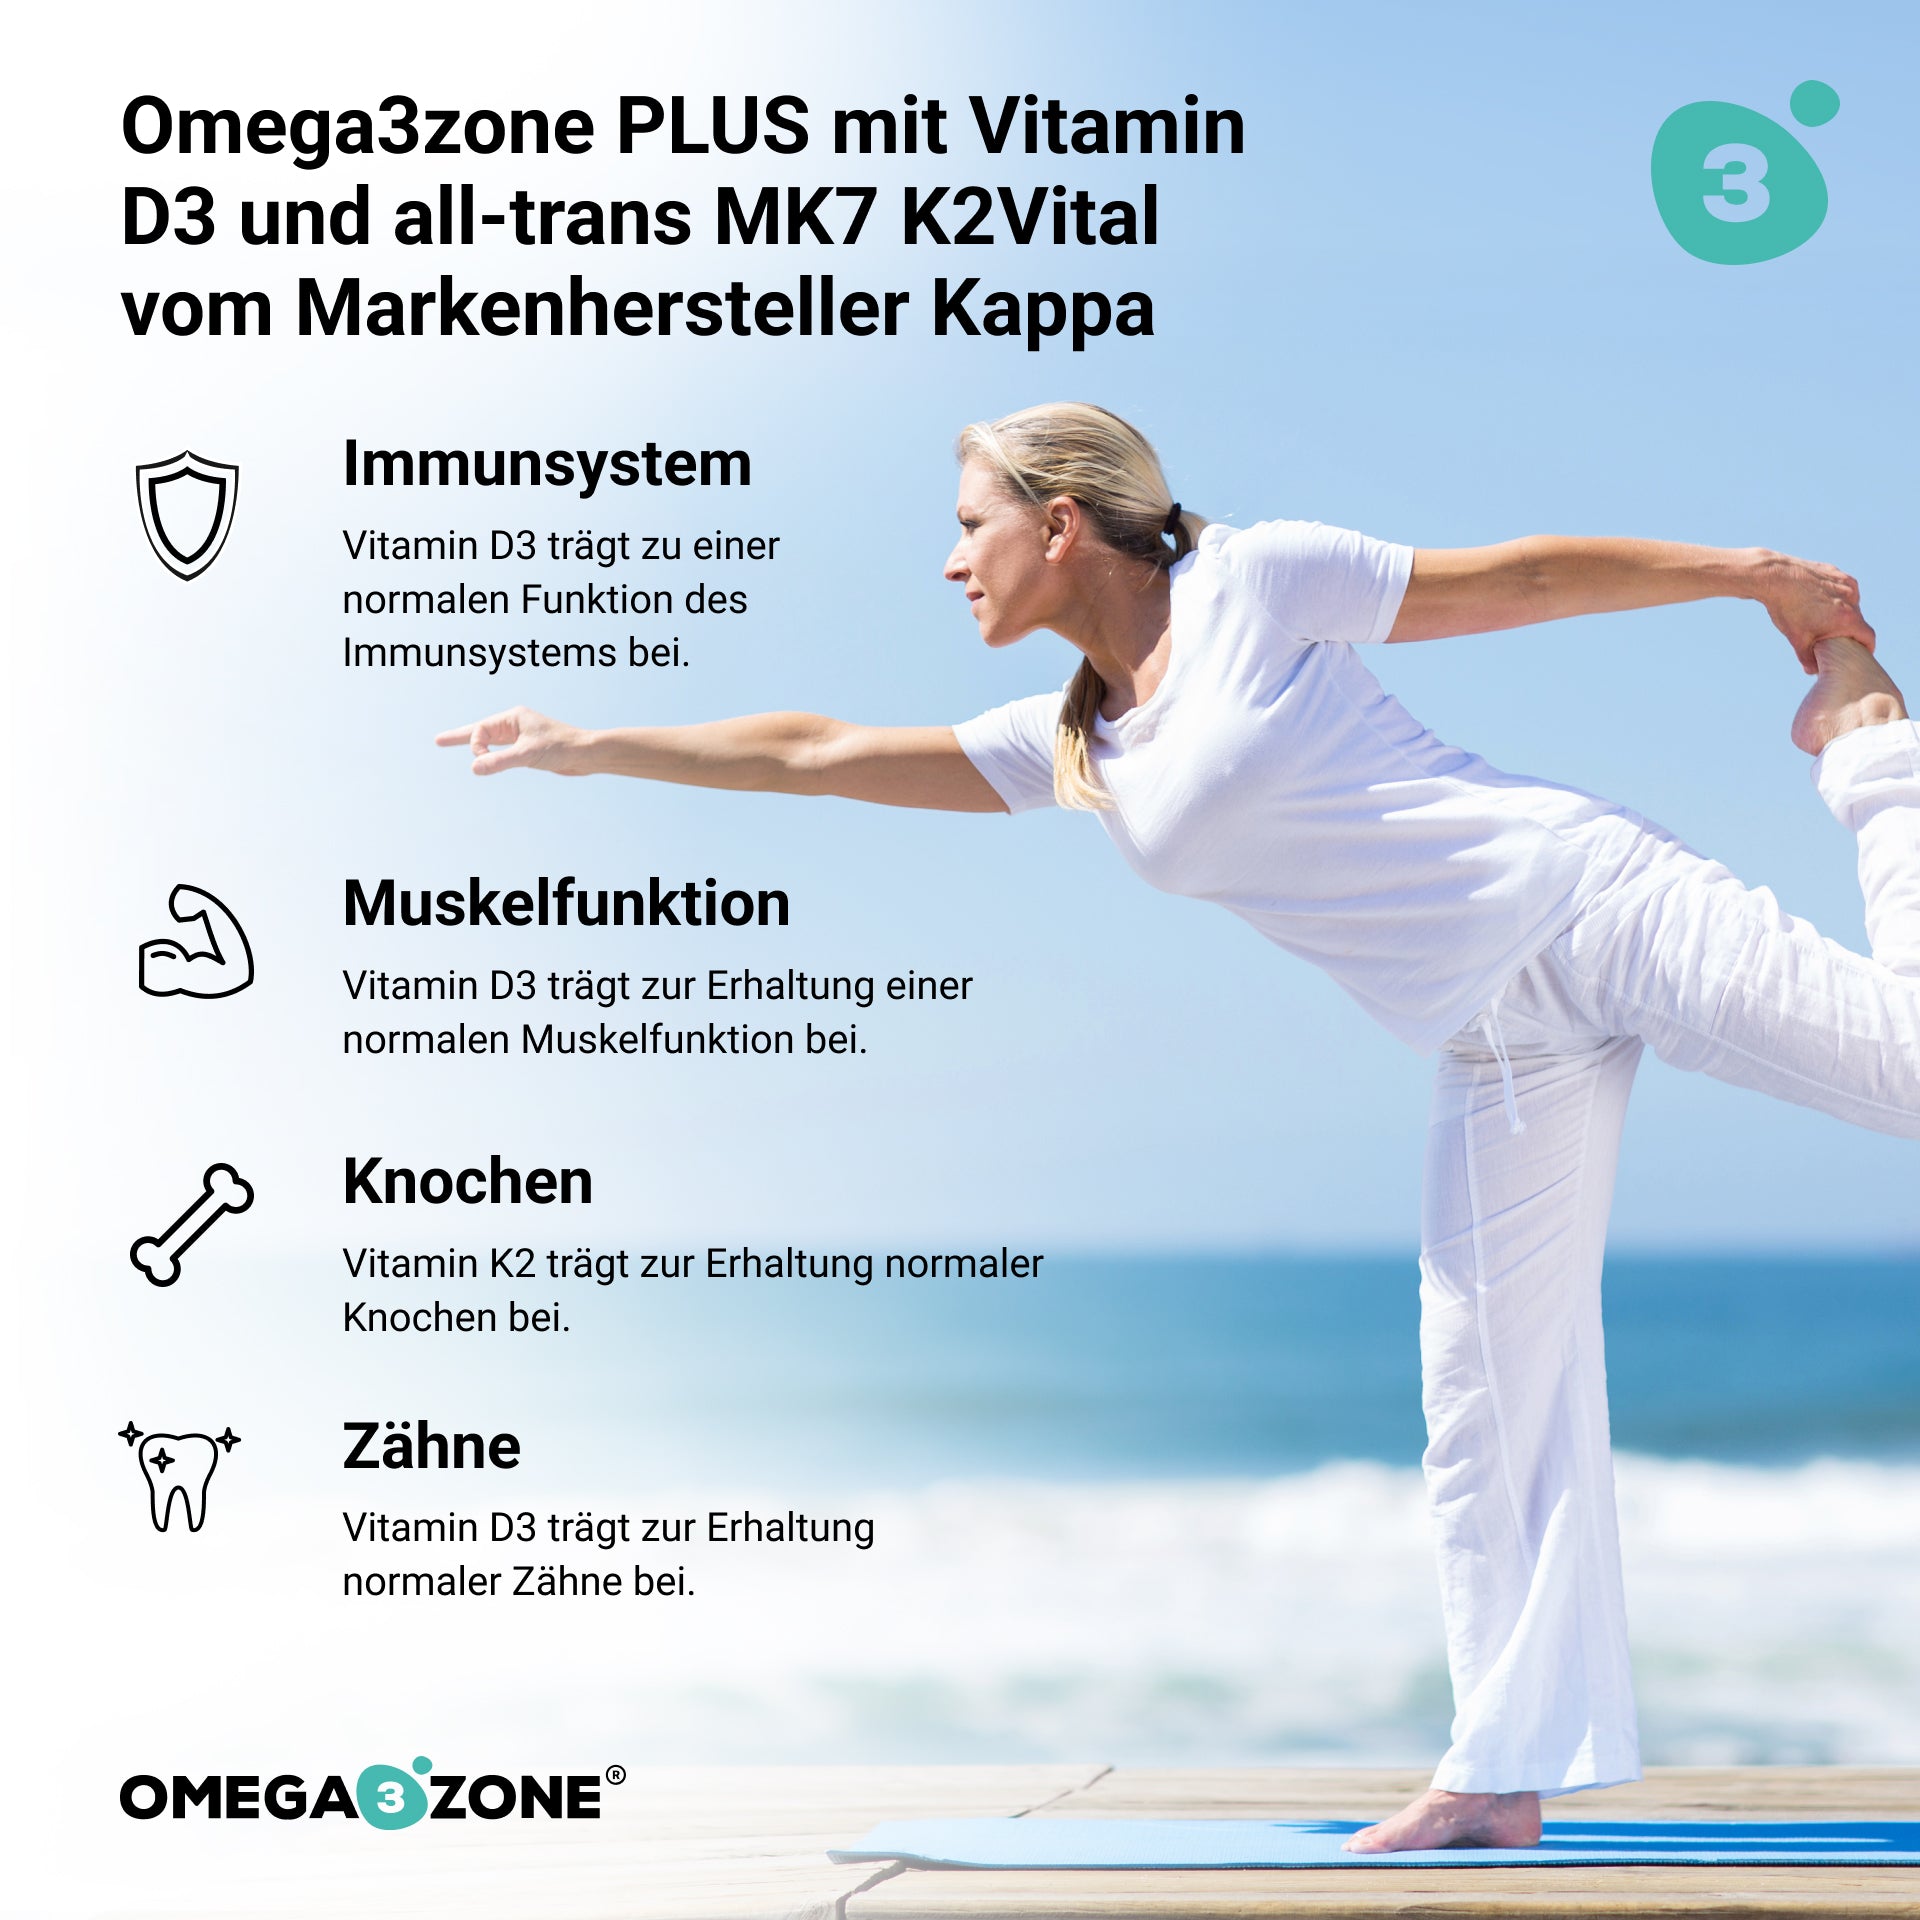 Eine Frau, die sich am Strand dehnt, um Omega3zone PLUS von der Omega3zone GmbH aufzunehmen.